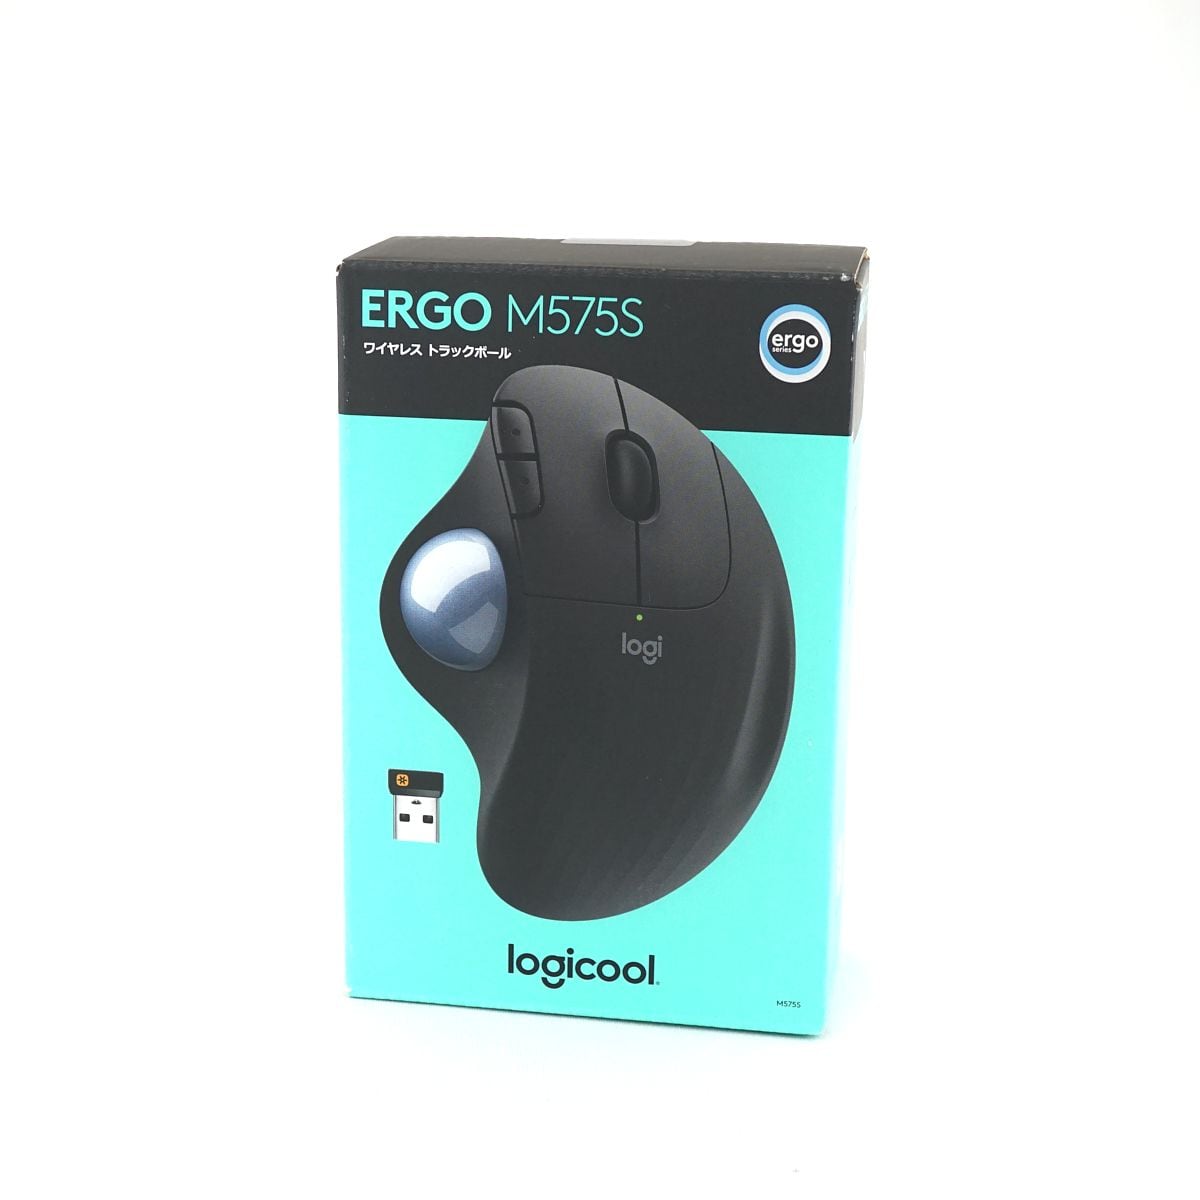 Logicool ロジクール ERGO M575S ワイヤレス トラックボールマウス ...